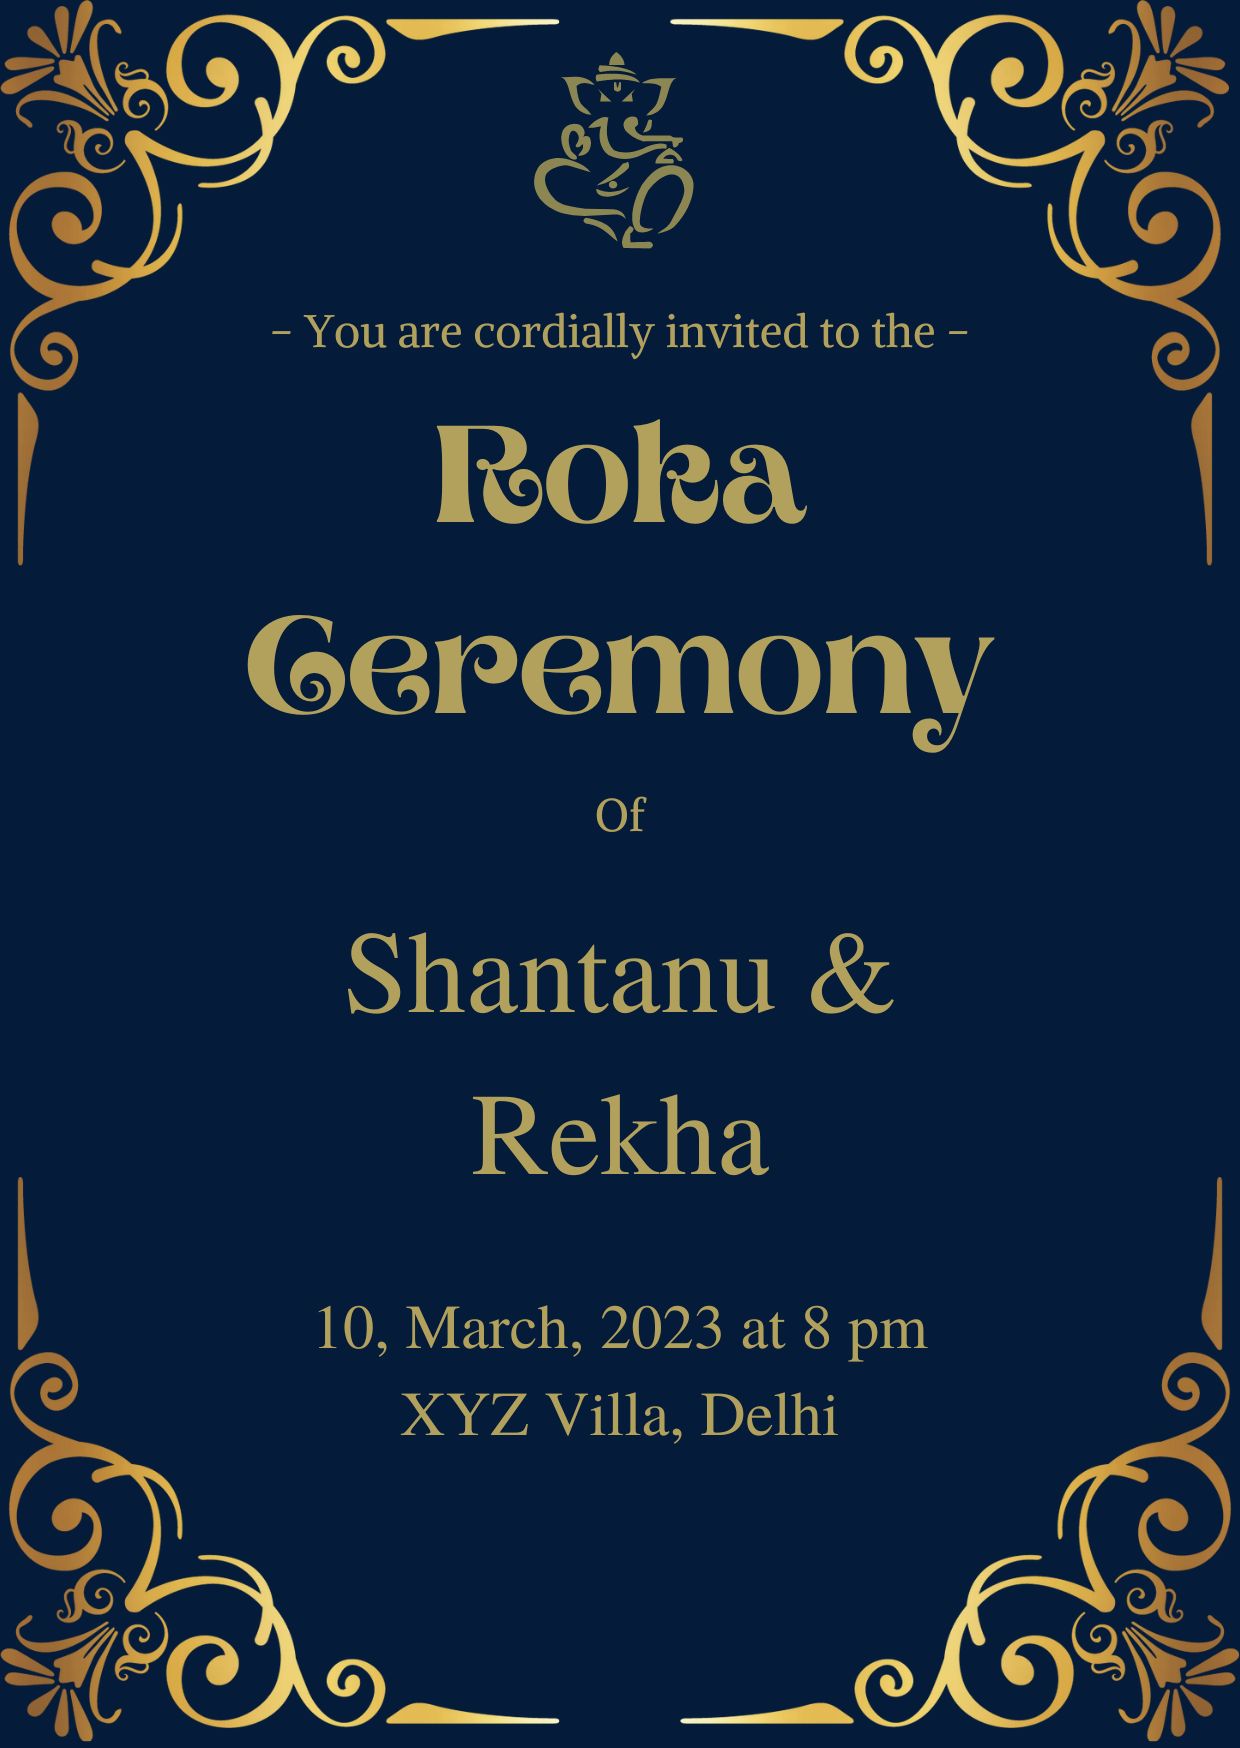 Roka ceremony card royalty